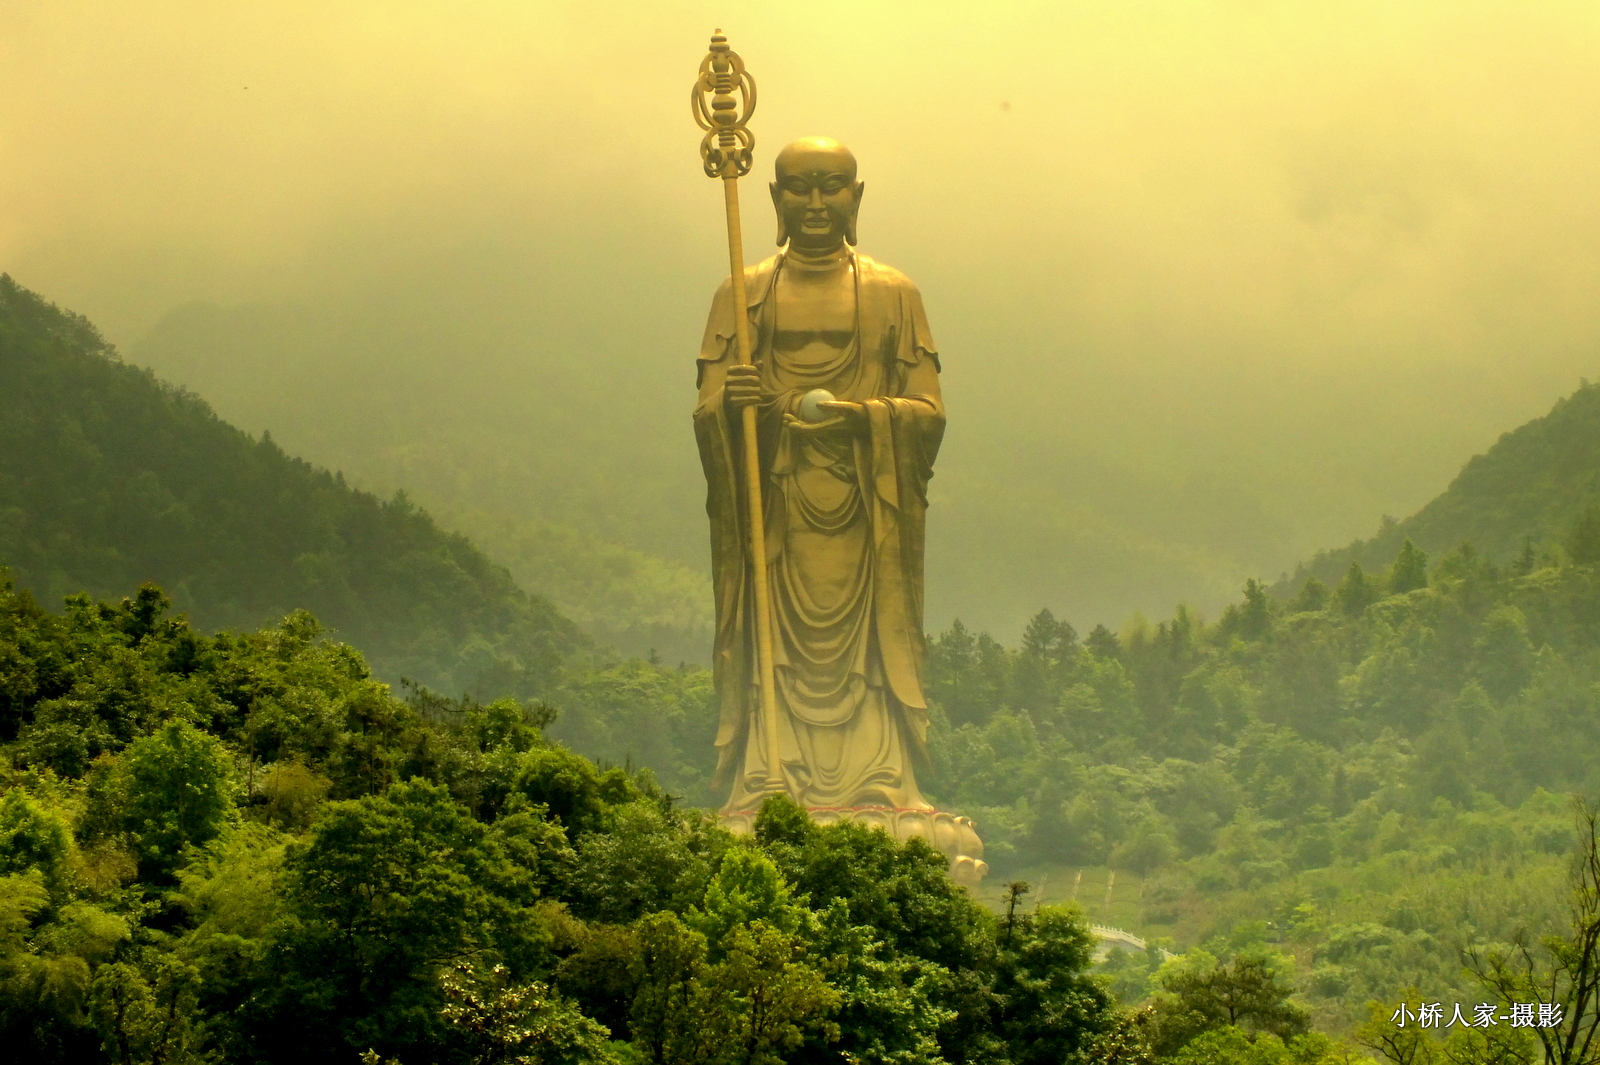 【携程攻略】灵山景区灵山大佛景点,灵山大佛高88米，是世界上最高大的露天青铜像，非常震撼！爬到上面然…